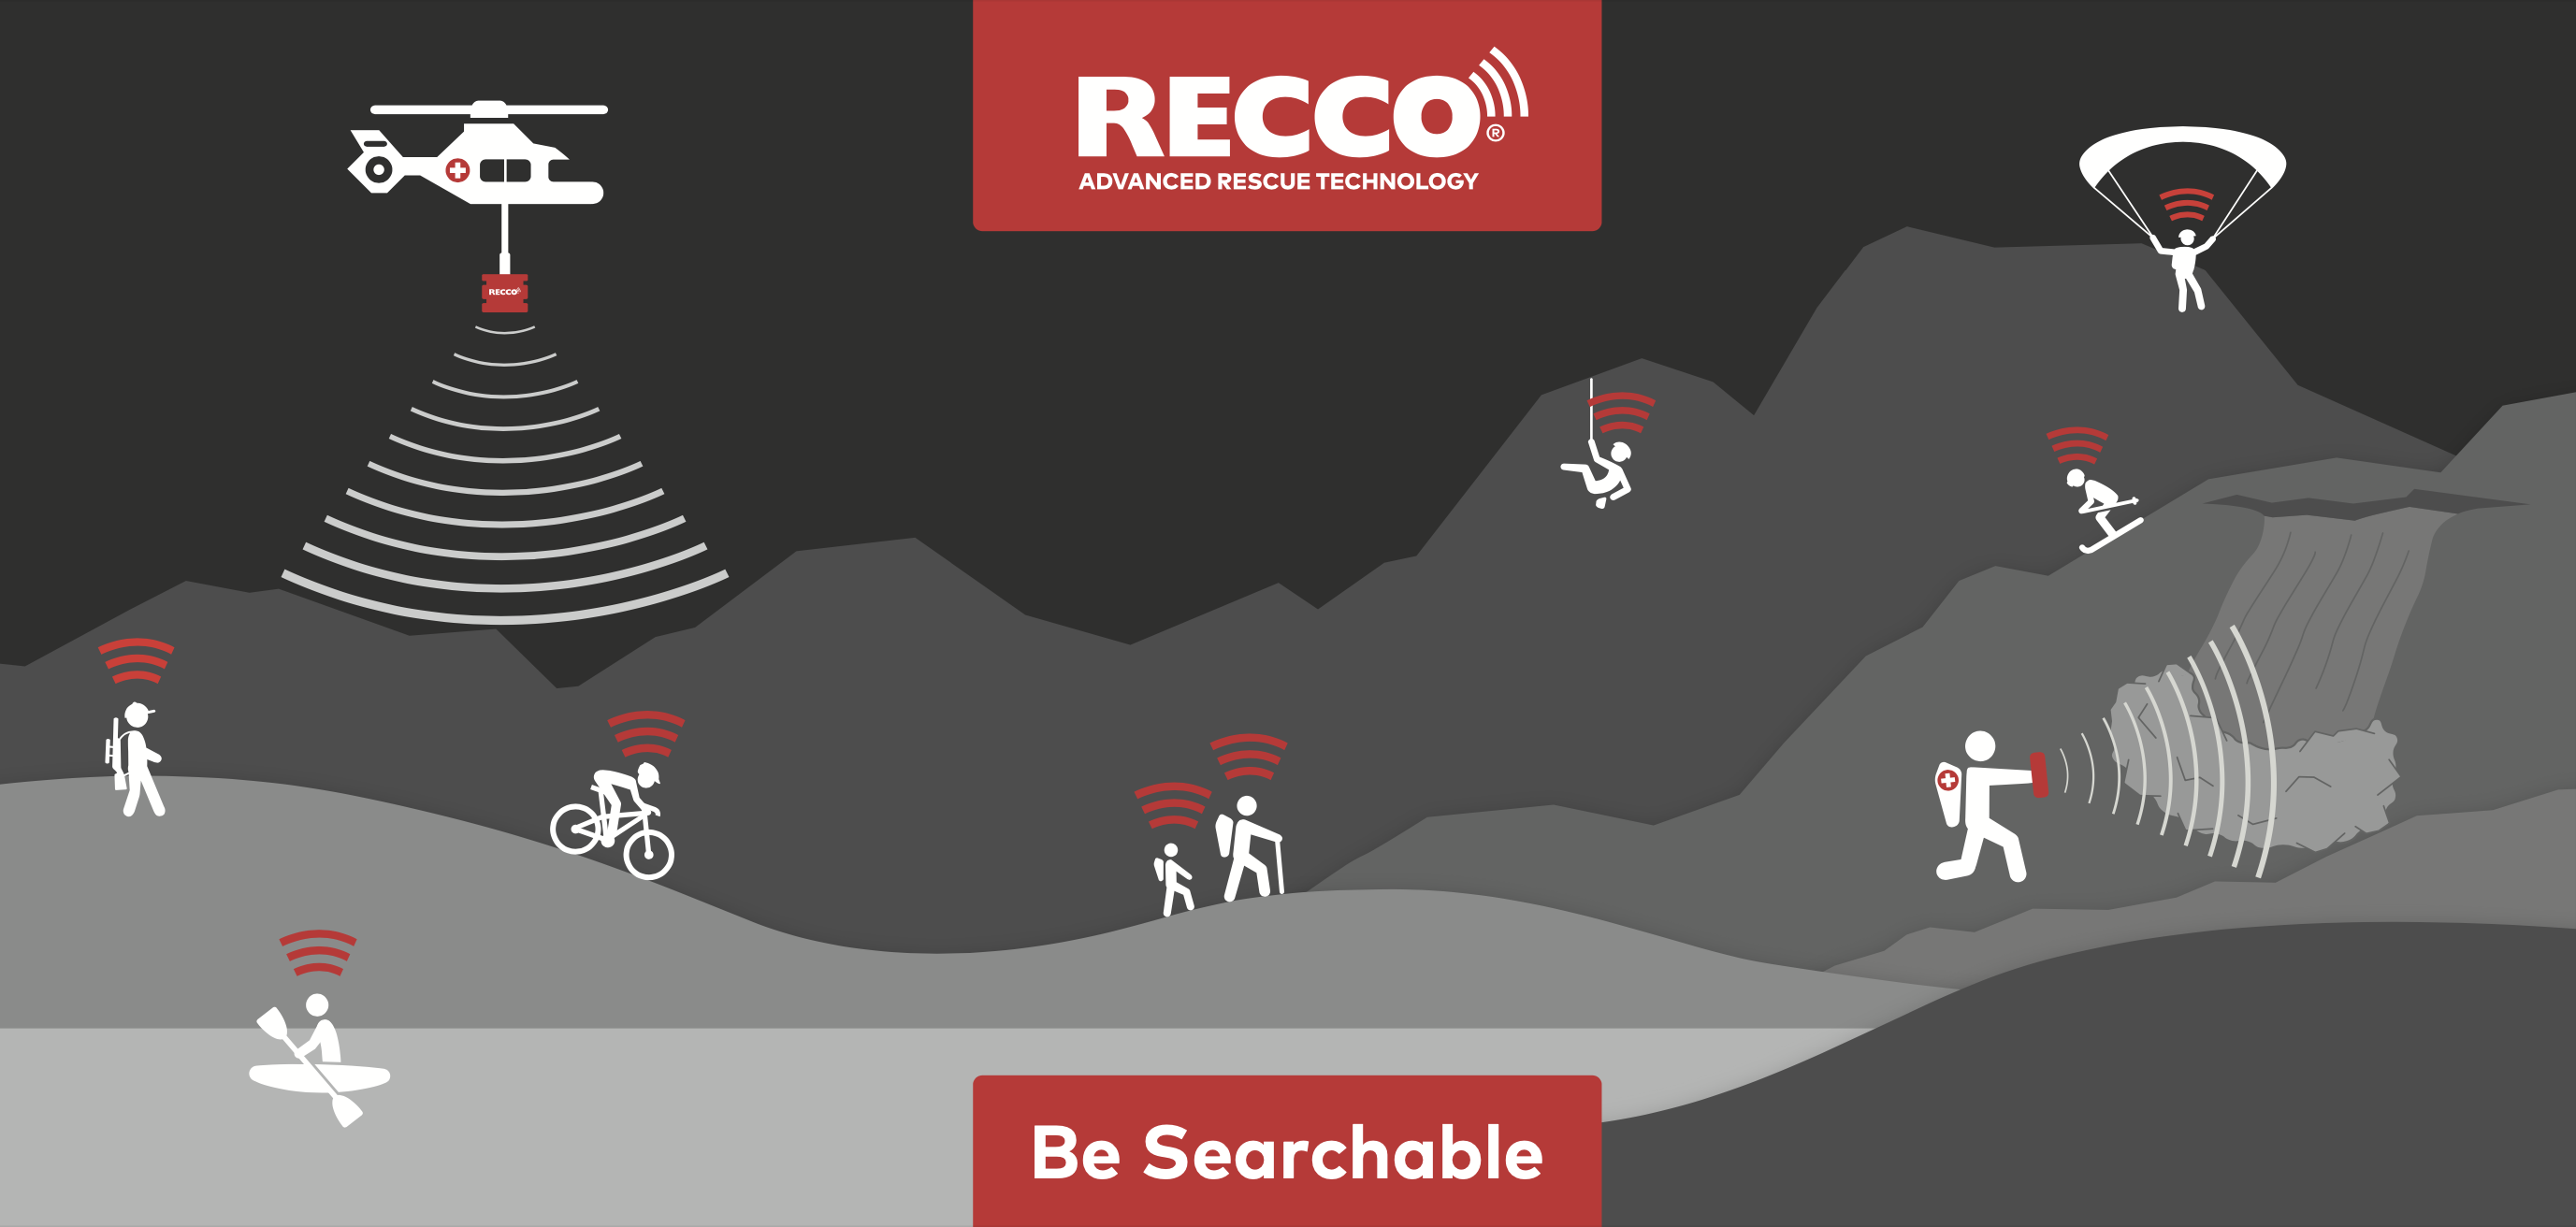 Recco Advanced Rescue Technology